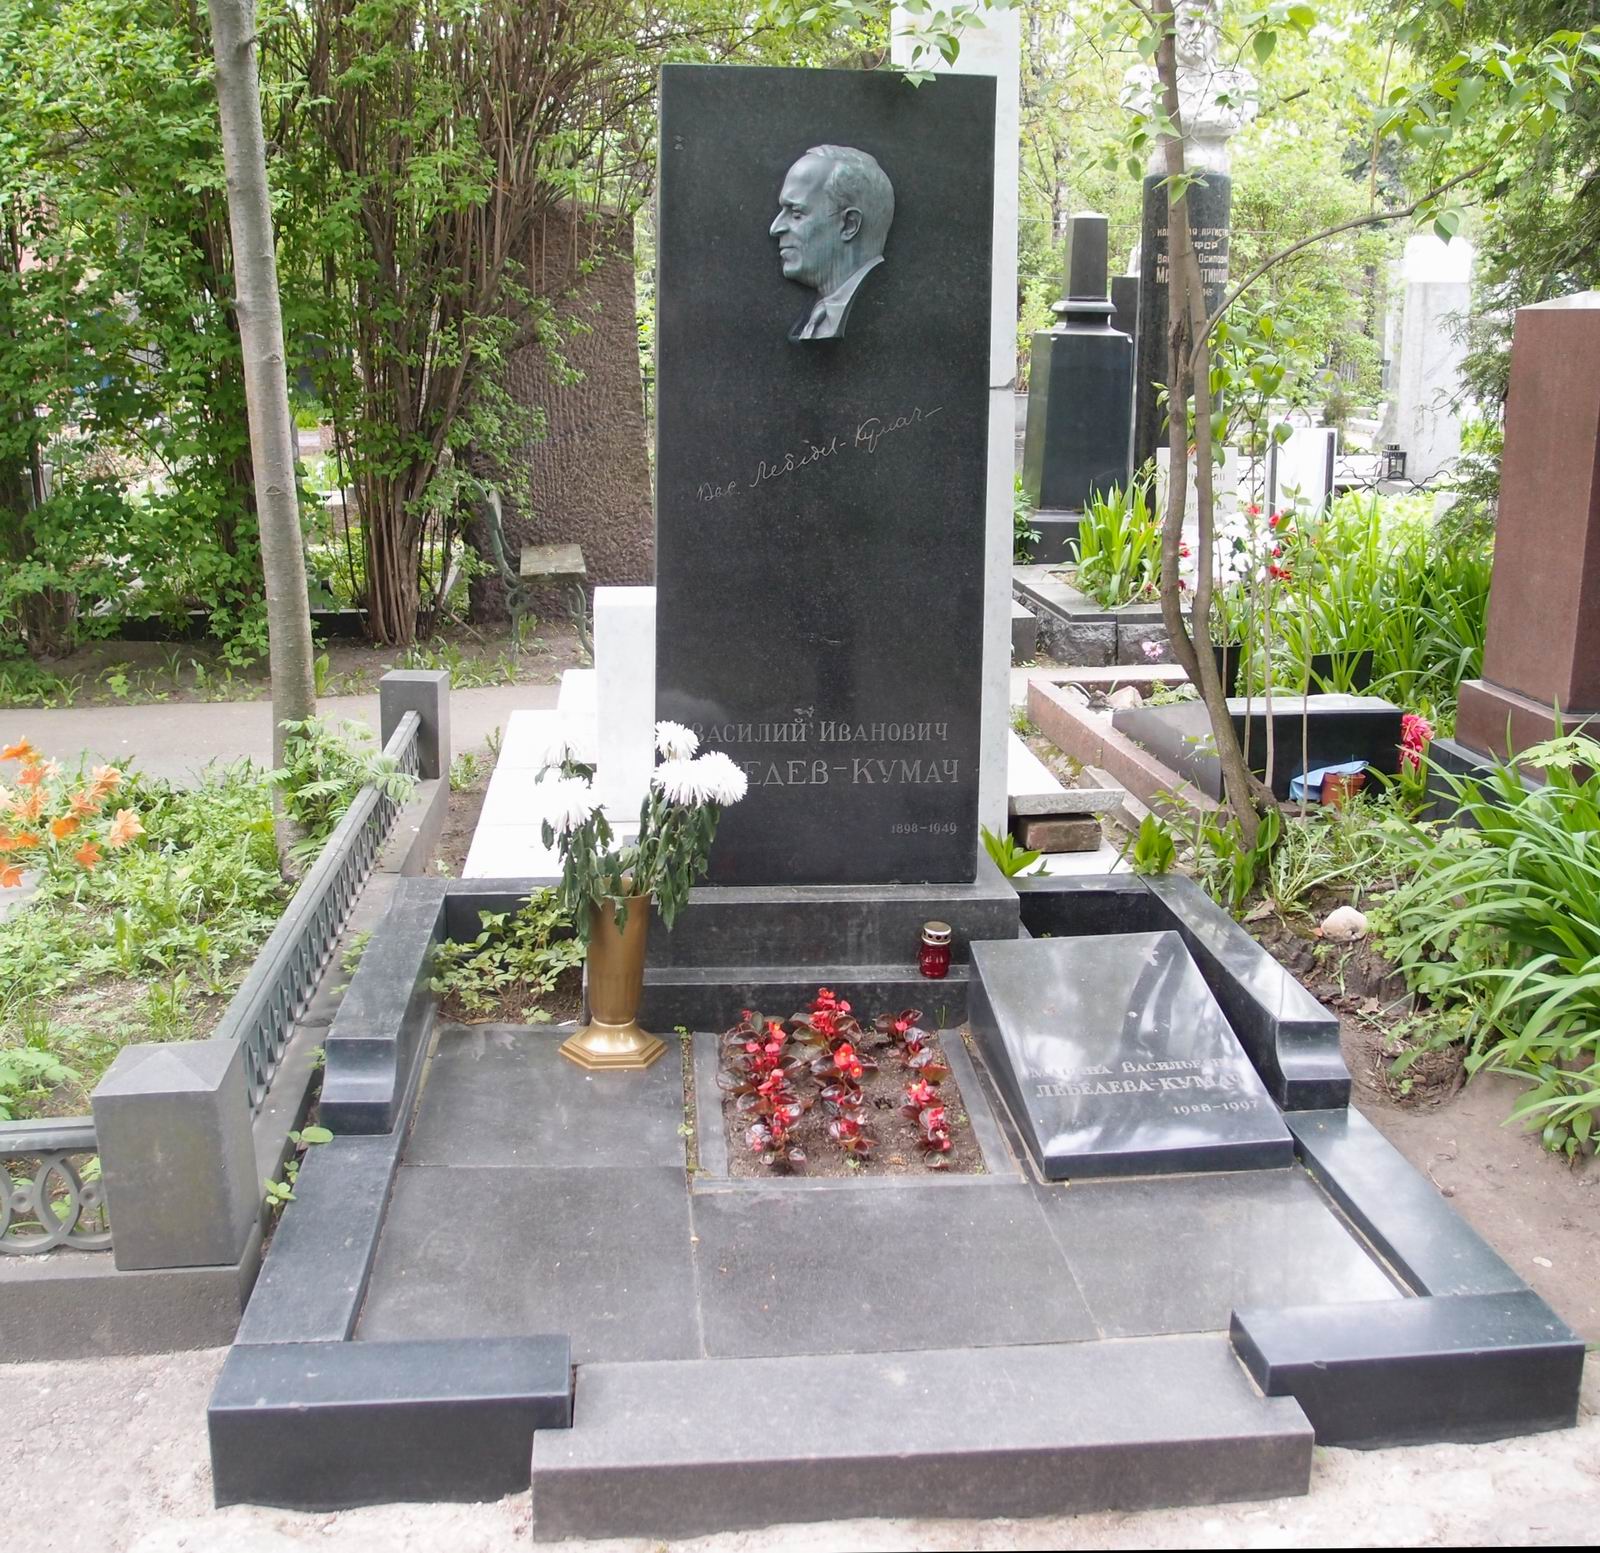 Памятник на могиле Лебедева-Кумача В.И. (1898-1949), ск. Е.Рудаков, на Новодевичьем кладбище (2-27-21).